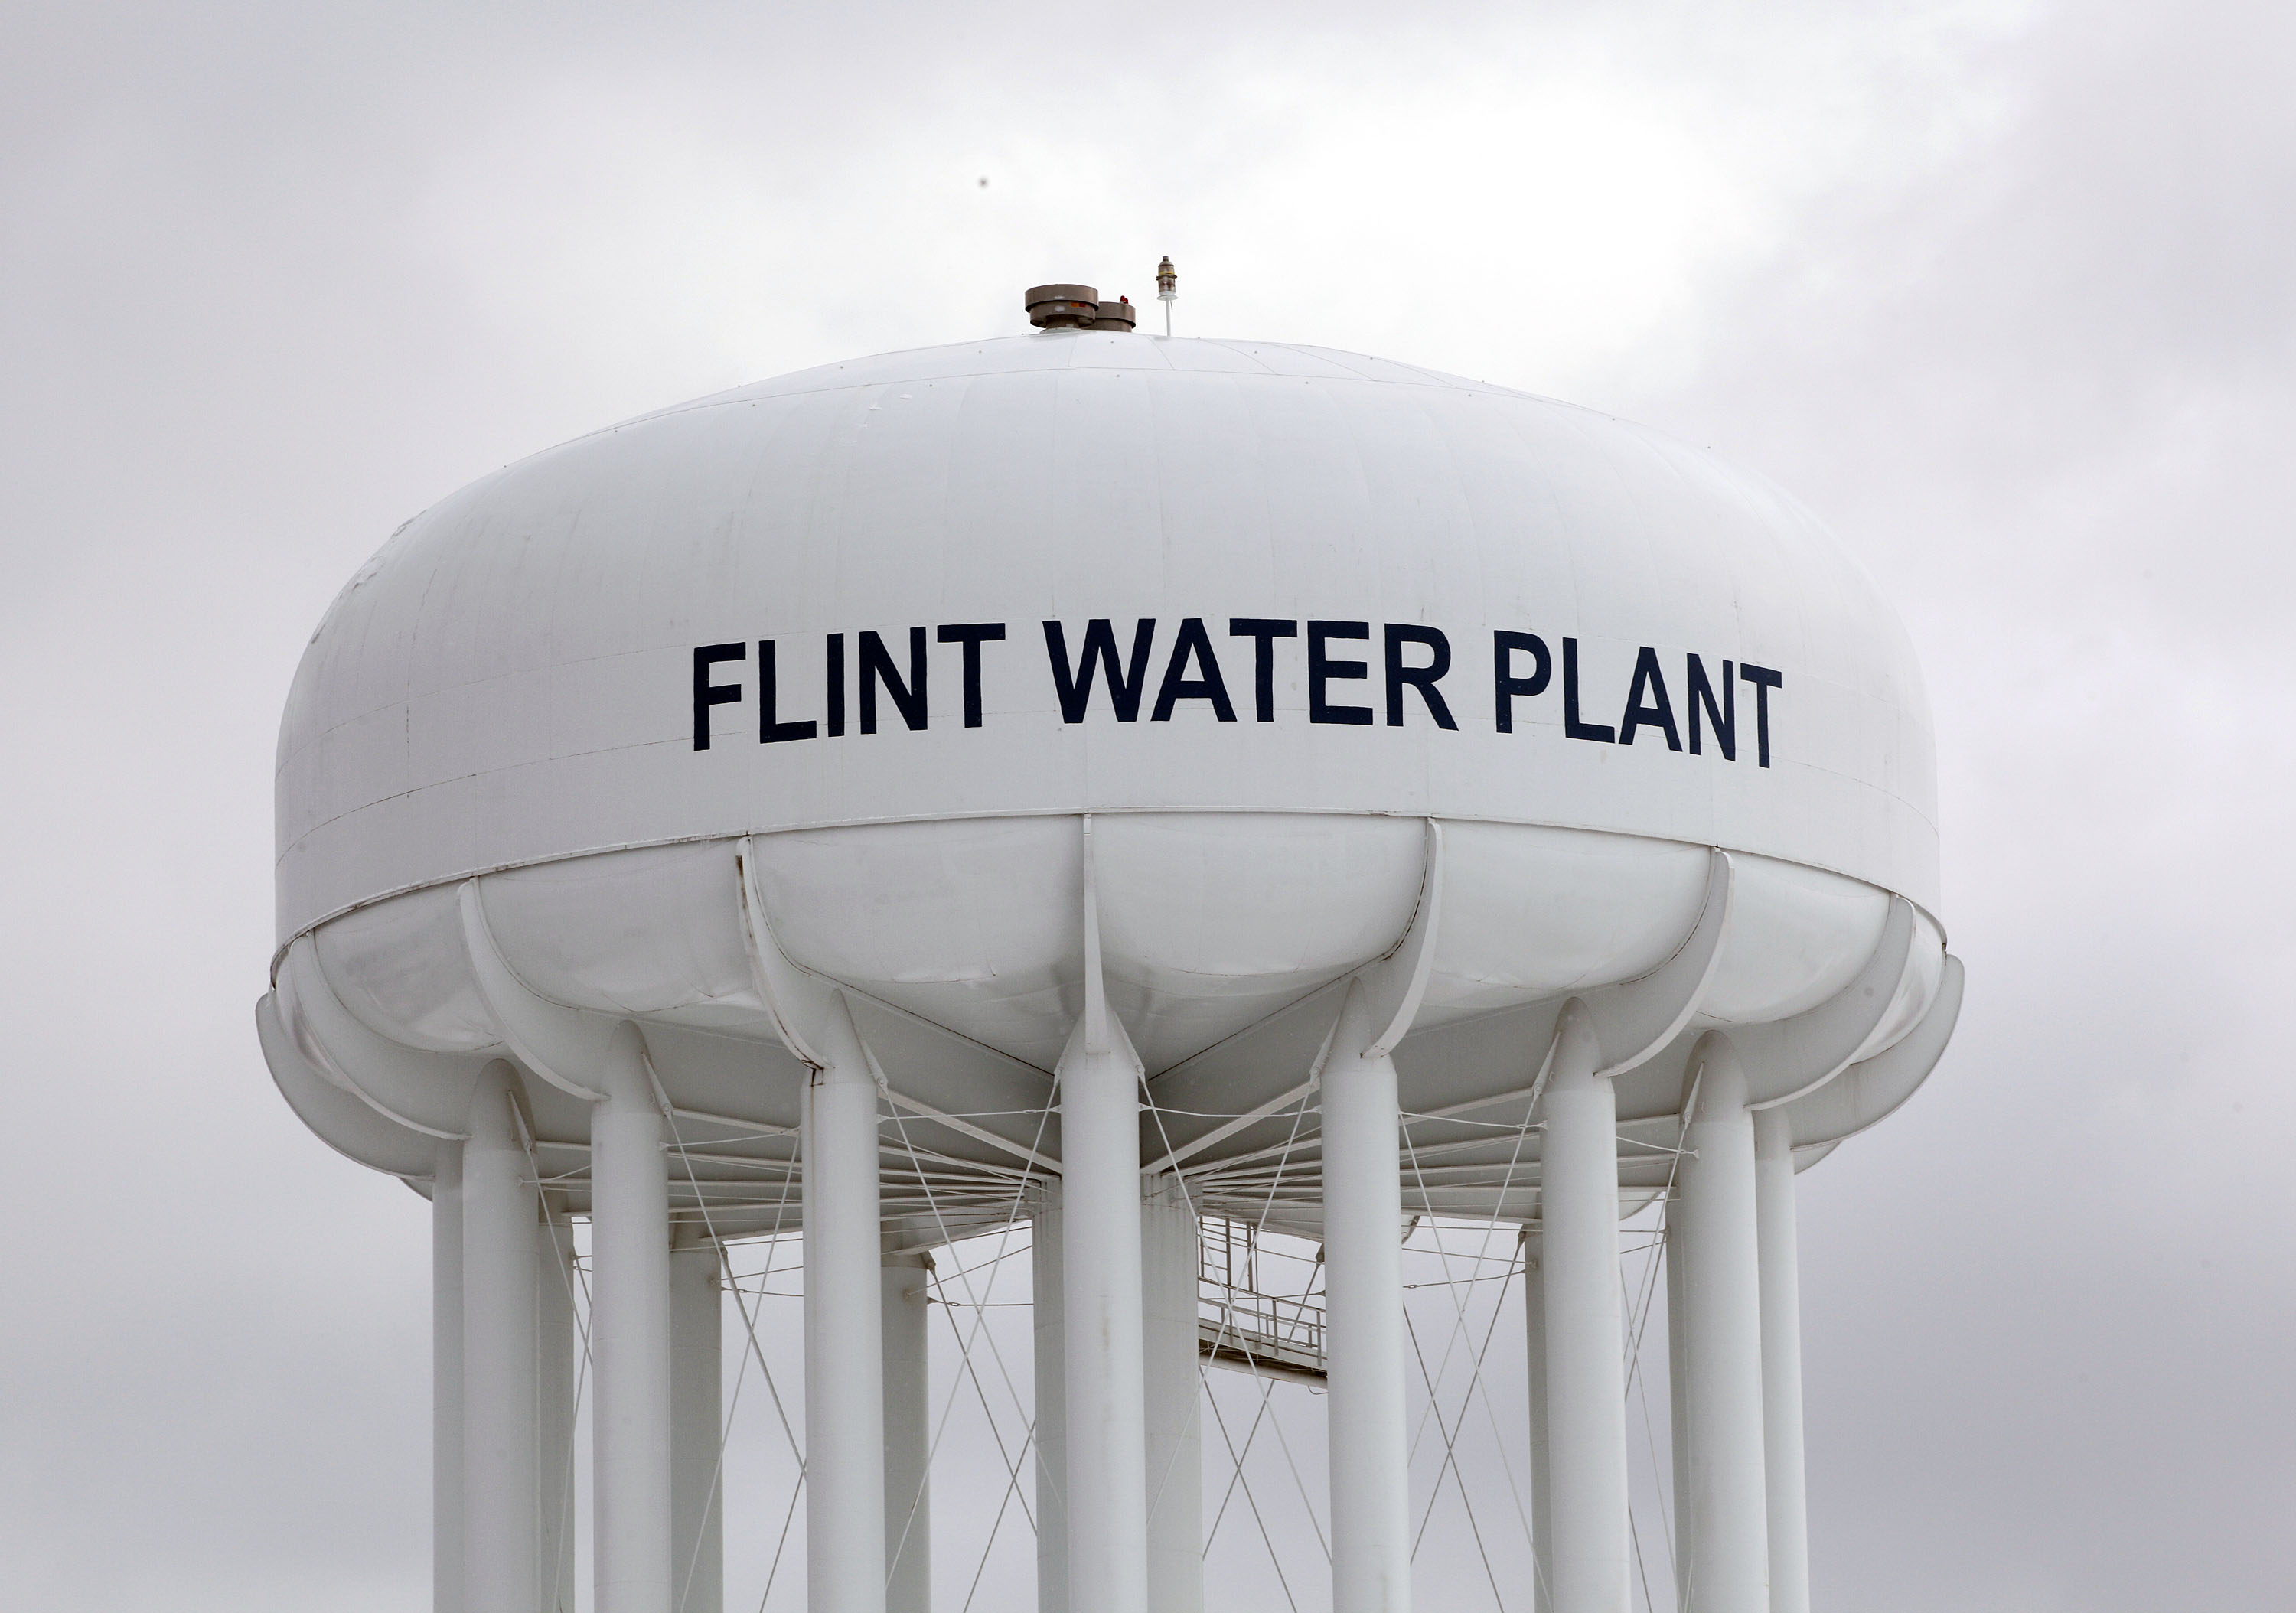 McLaren Will Pay $5M, Not $20M, In Flint Water Settlement